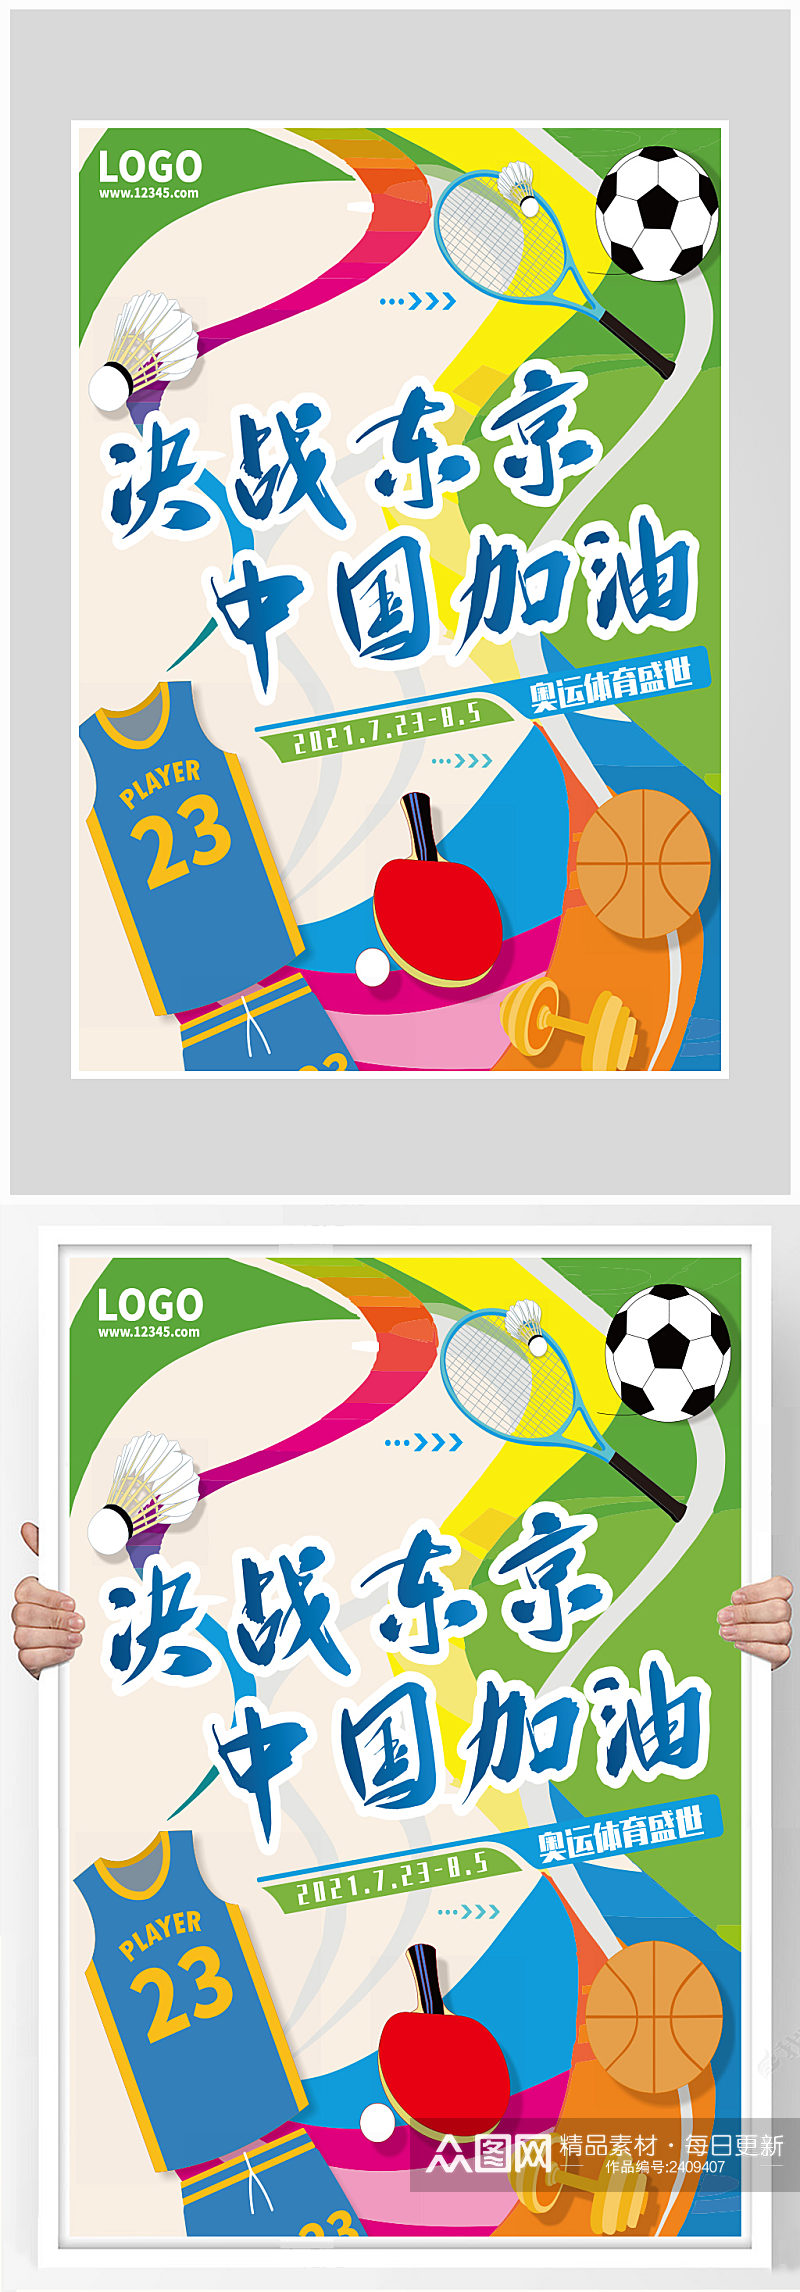 创意质感决战东京奥运会比赛海报素材